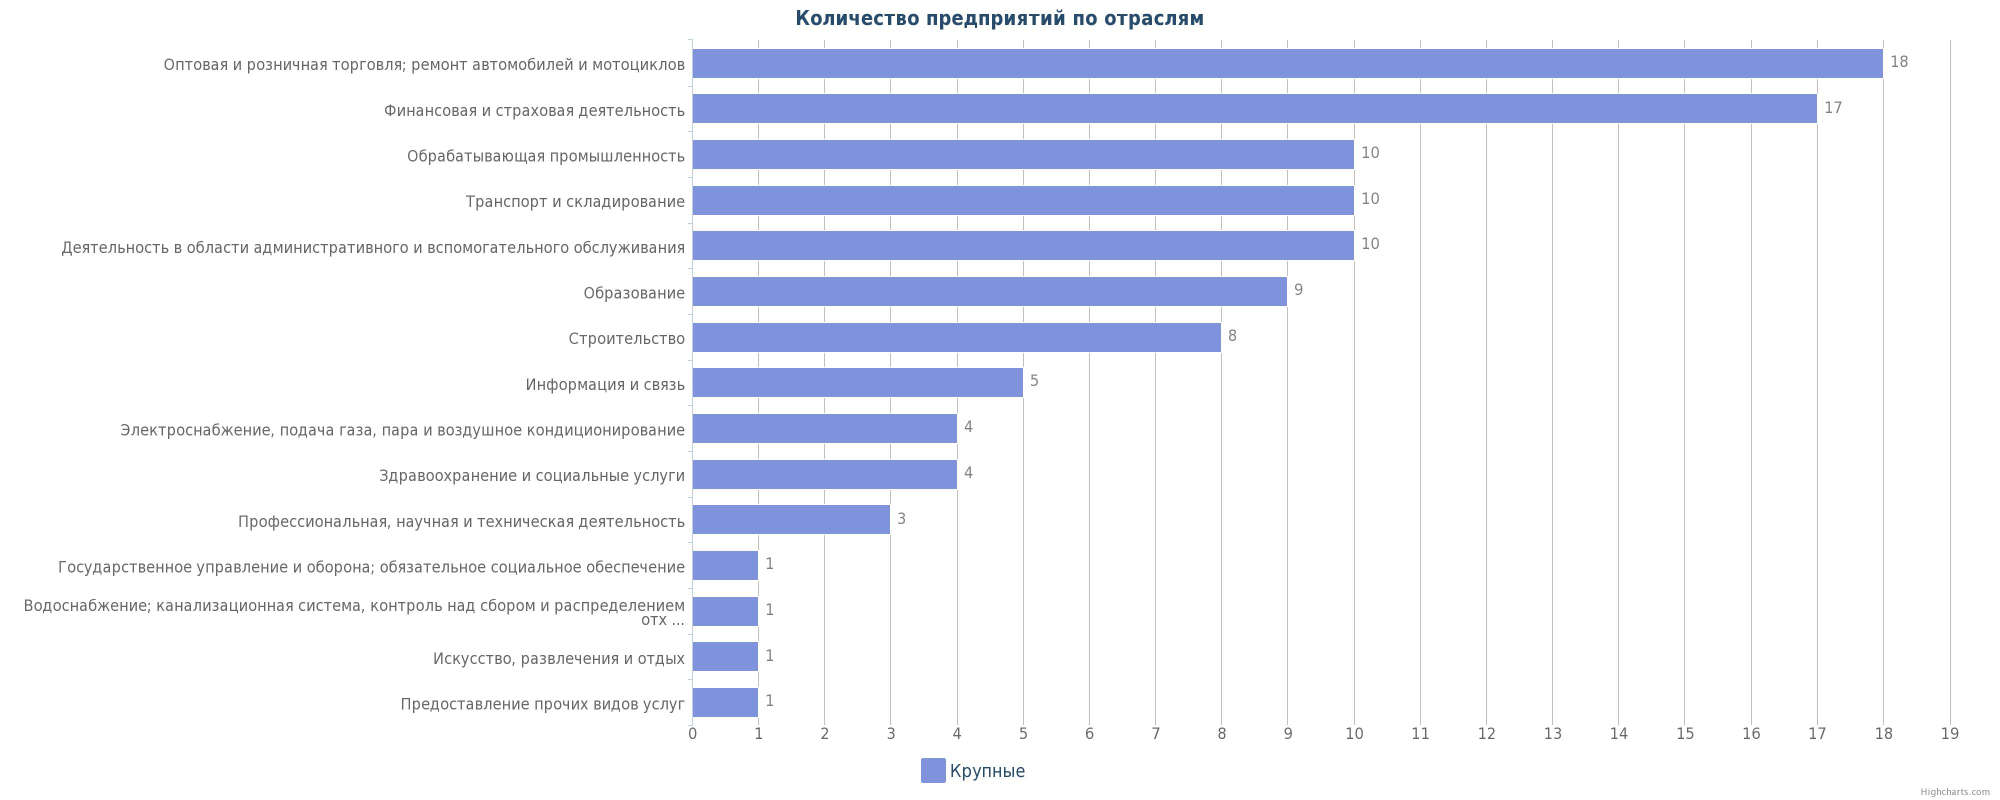 Крупные предприятия Алматы по отраслям - диаграмма